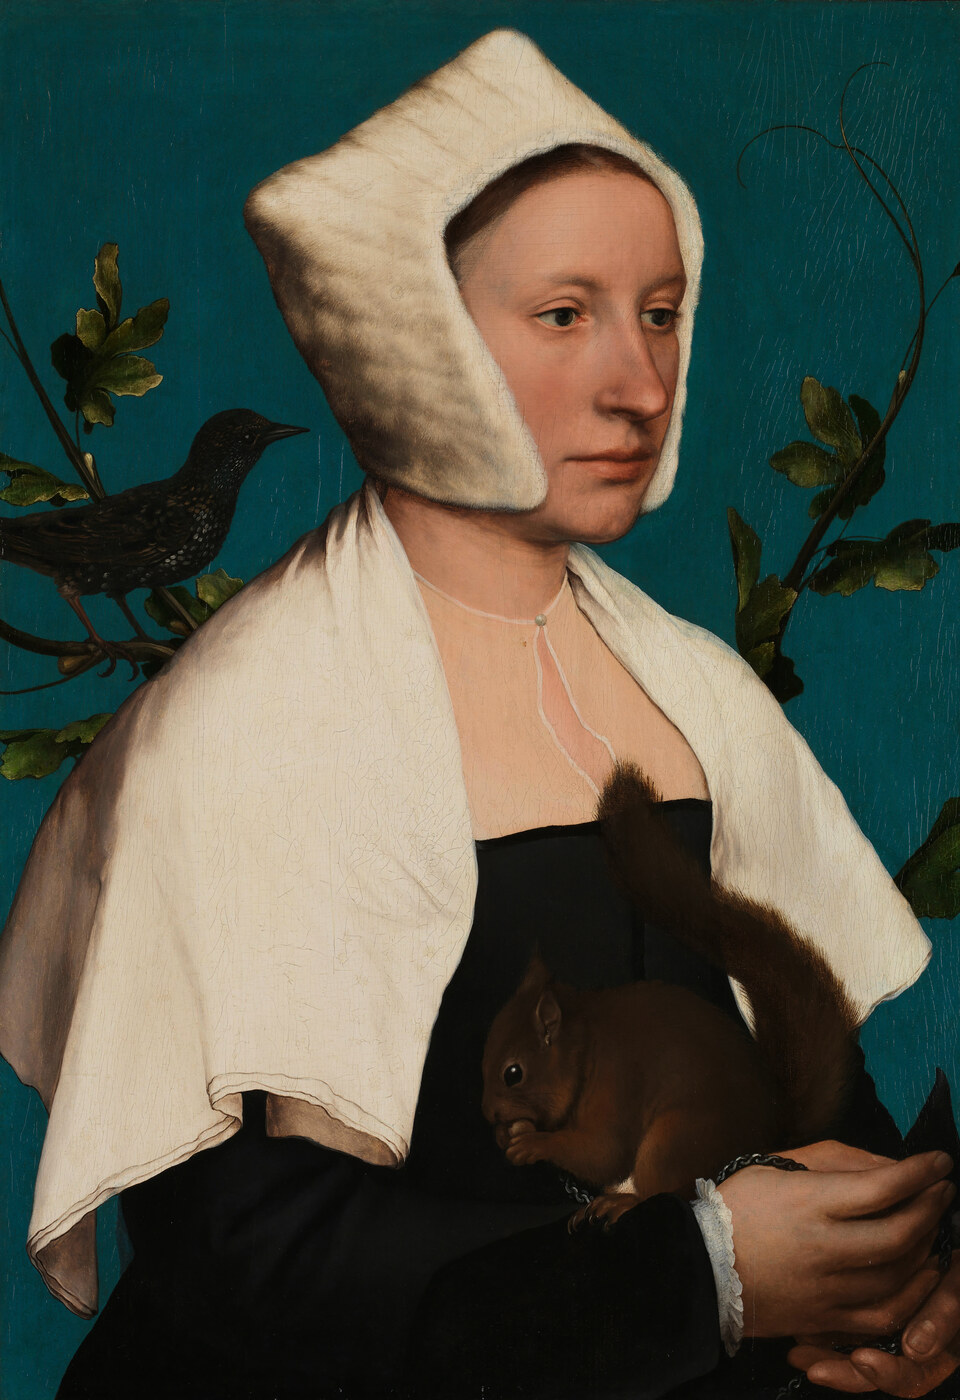 Malen wie Holbein